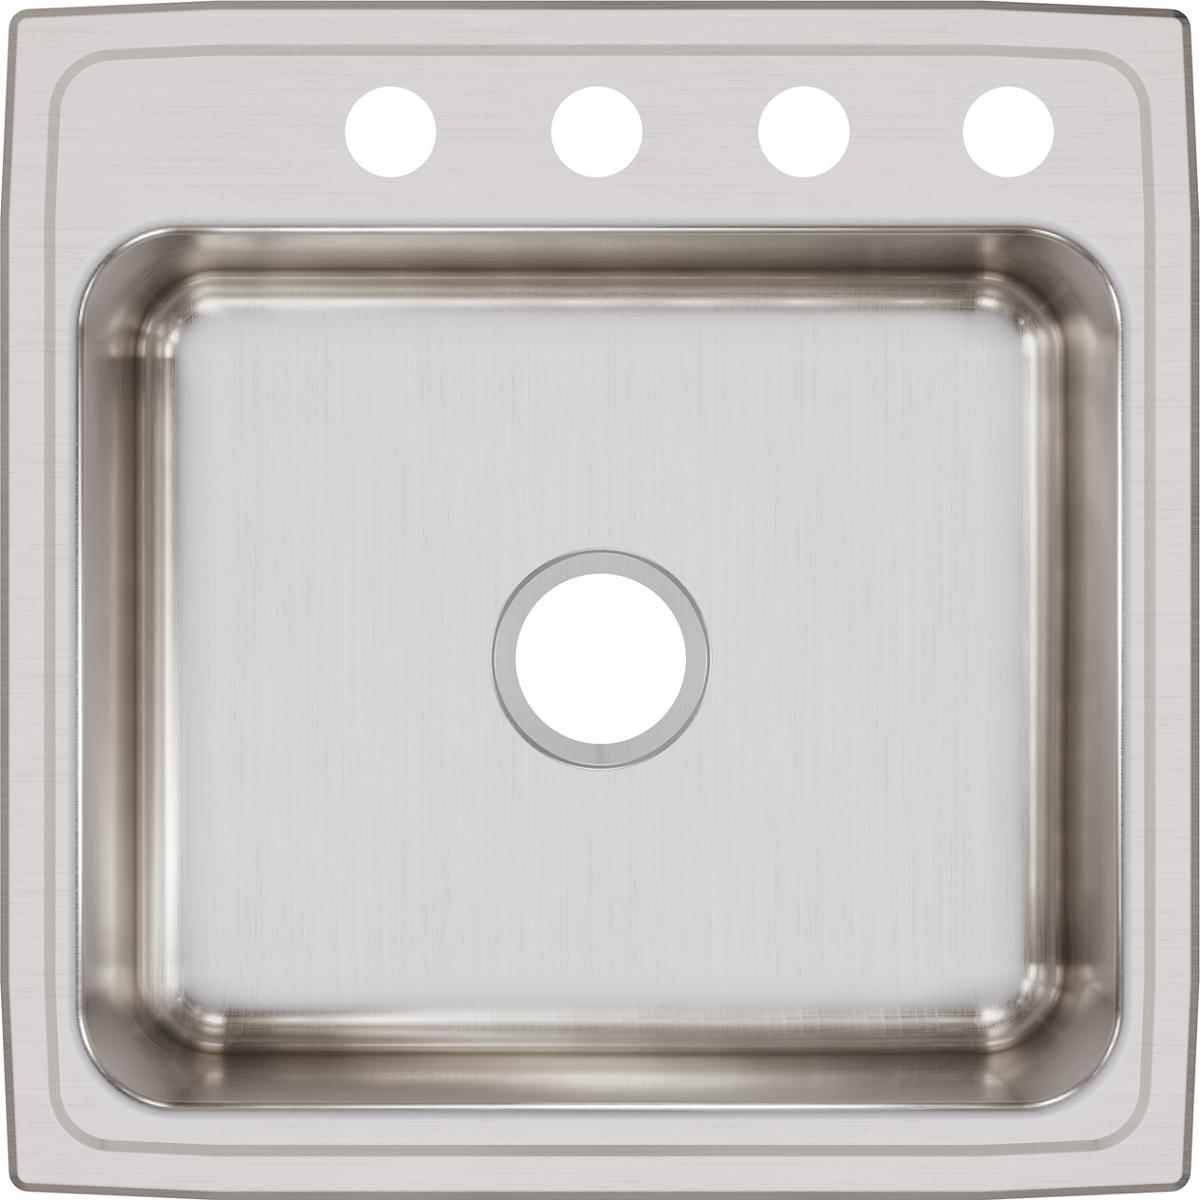 Elkay Lustertone Classic 22" x 22" x 7-5/8" Single Bowl Stainless Steel Drop-in Sink